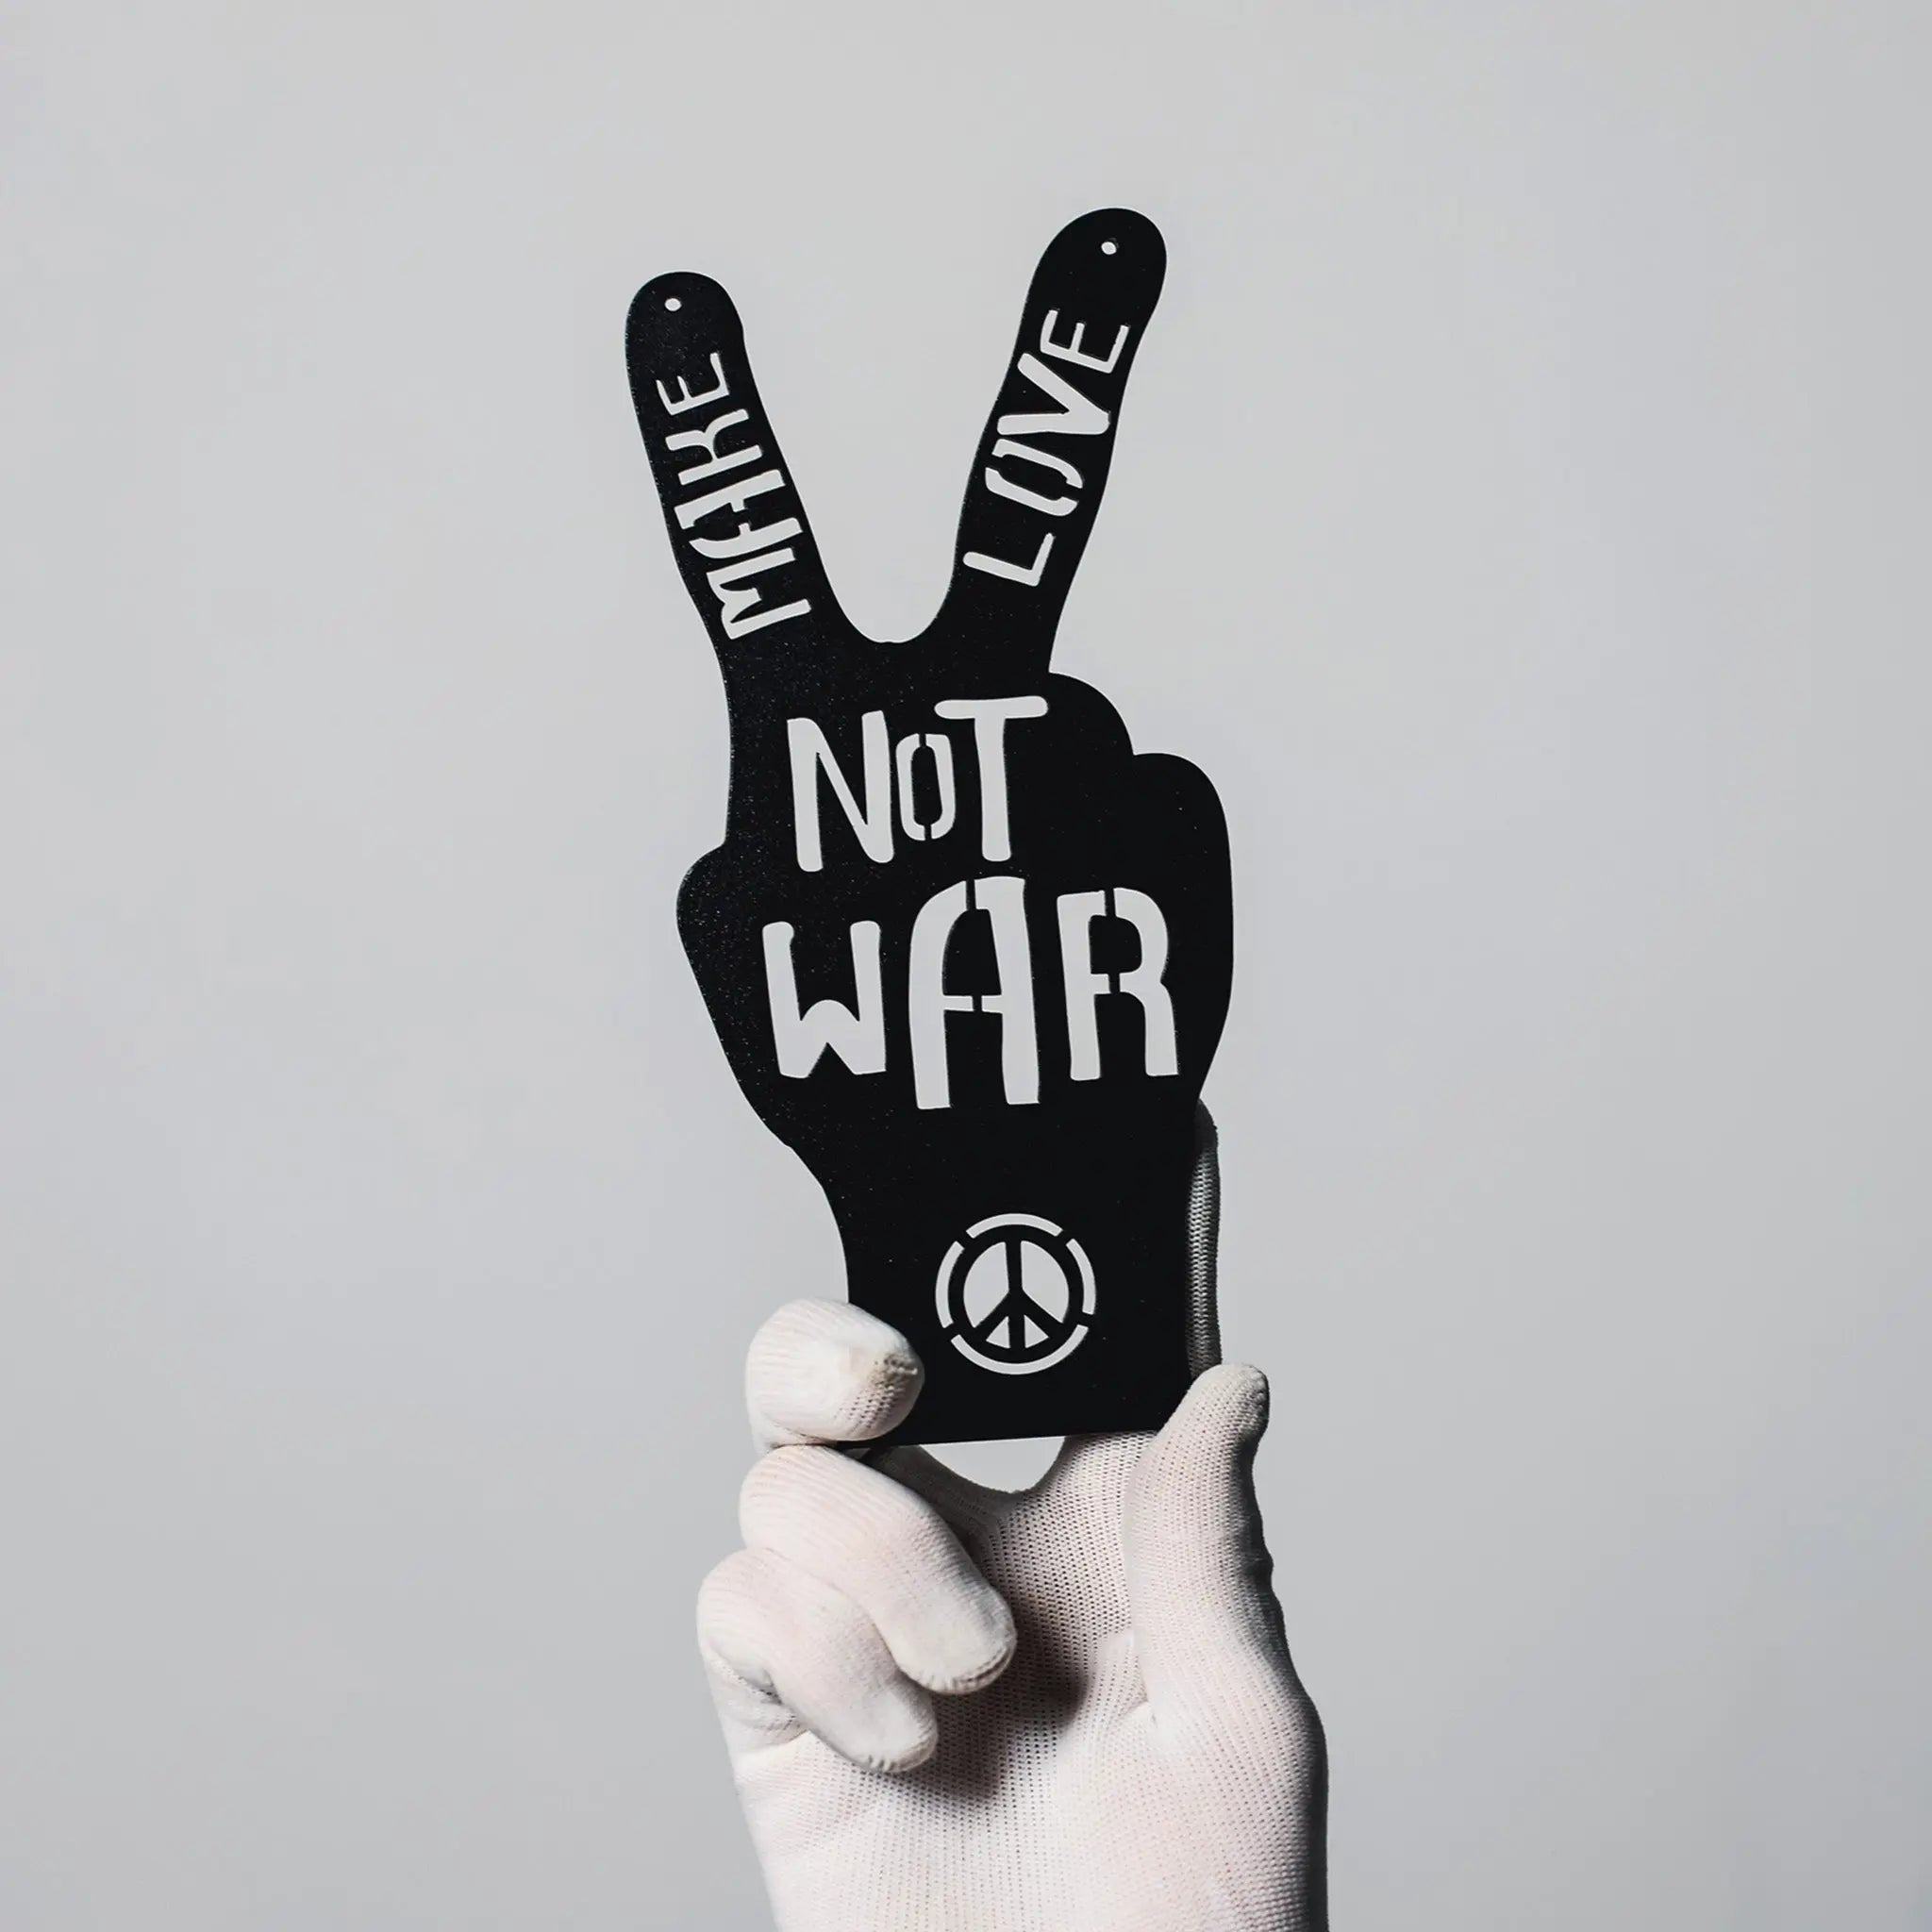 Make Love Not War -  "Peace" Schild